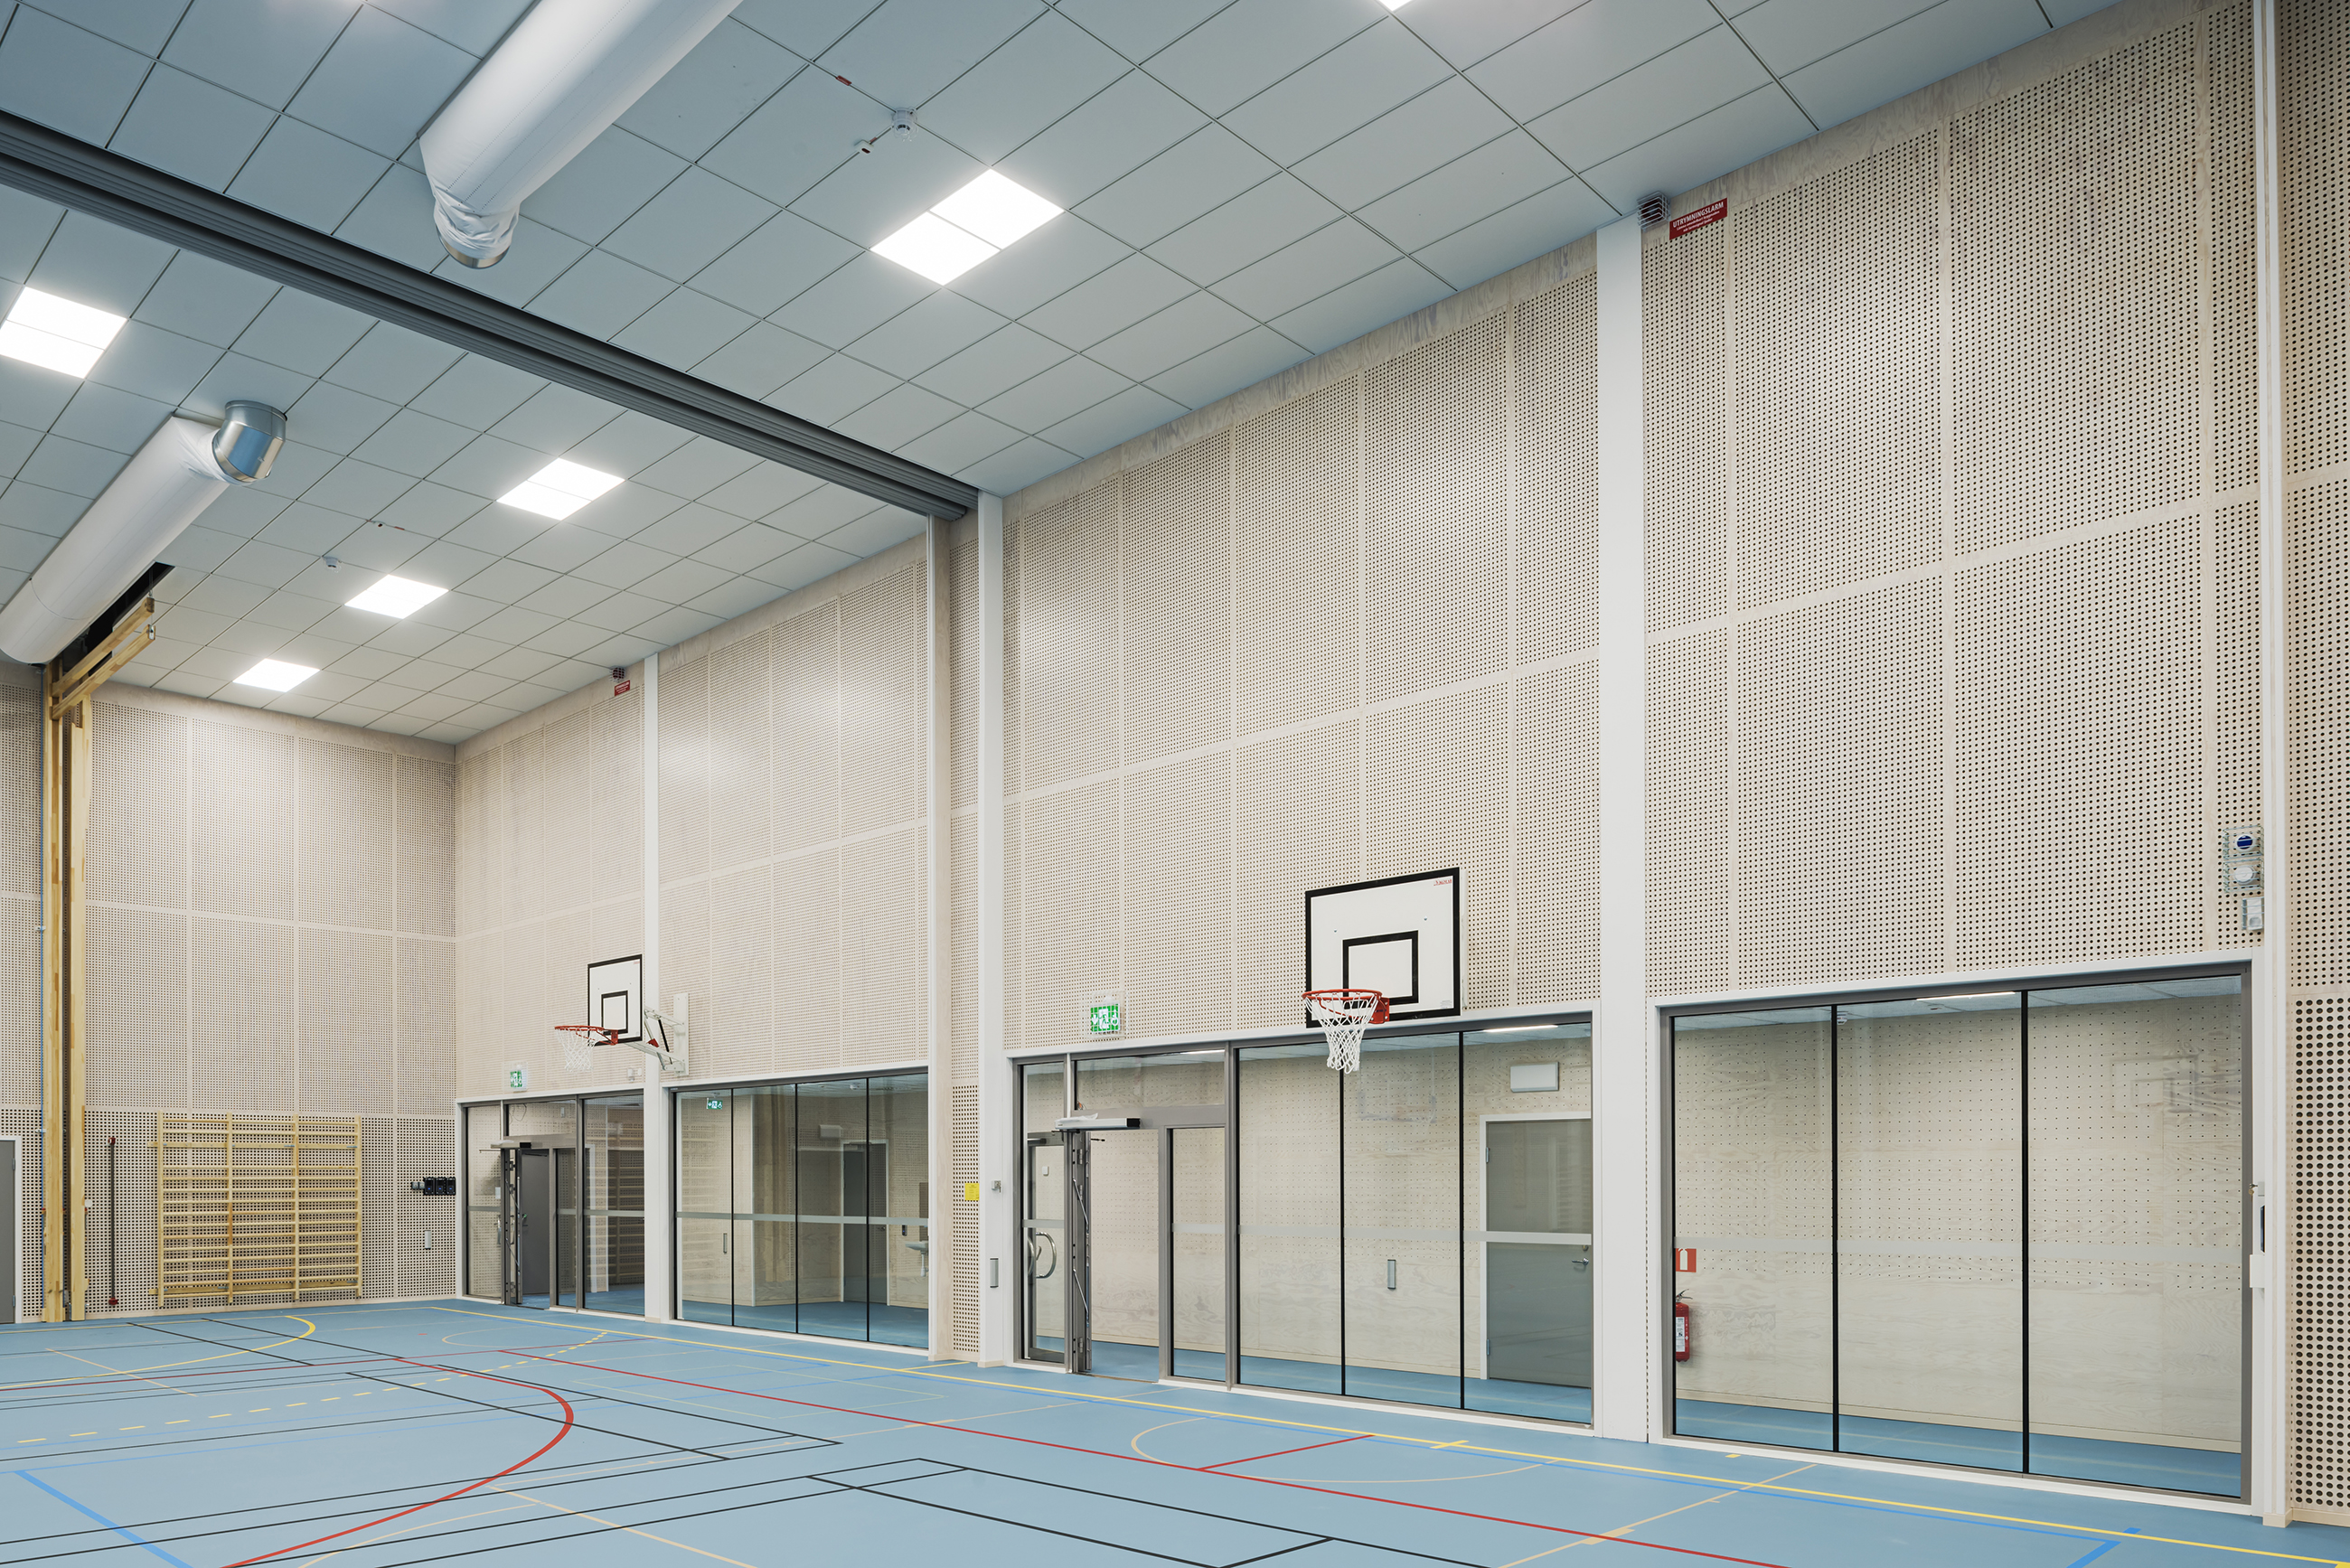 Gymnastiksal med perforerede paneler på væggene og blåt gulv